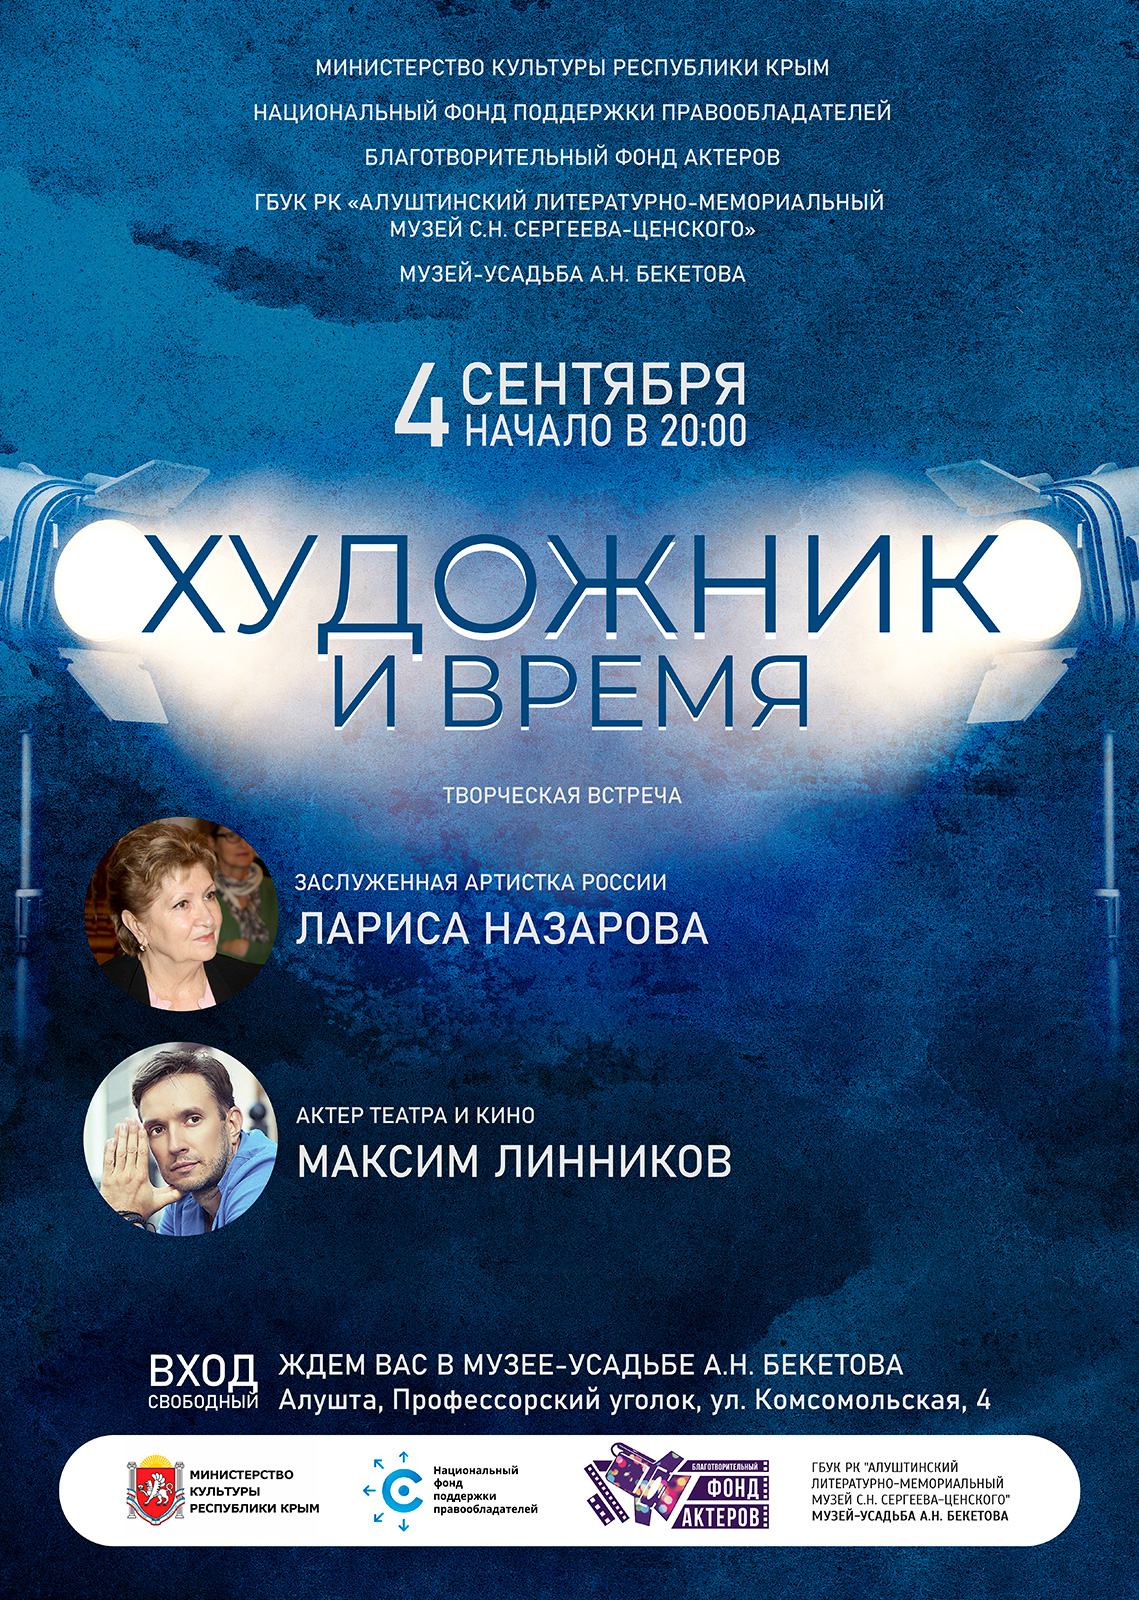 НФПП организует культурные мероприятия в Крыму